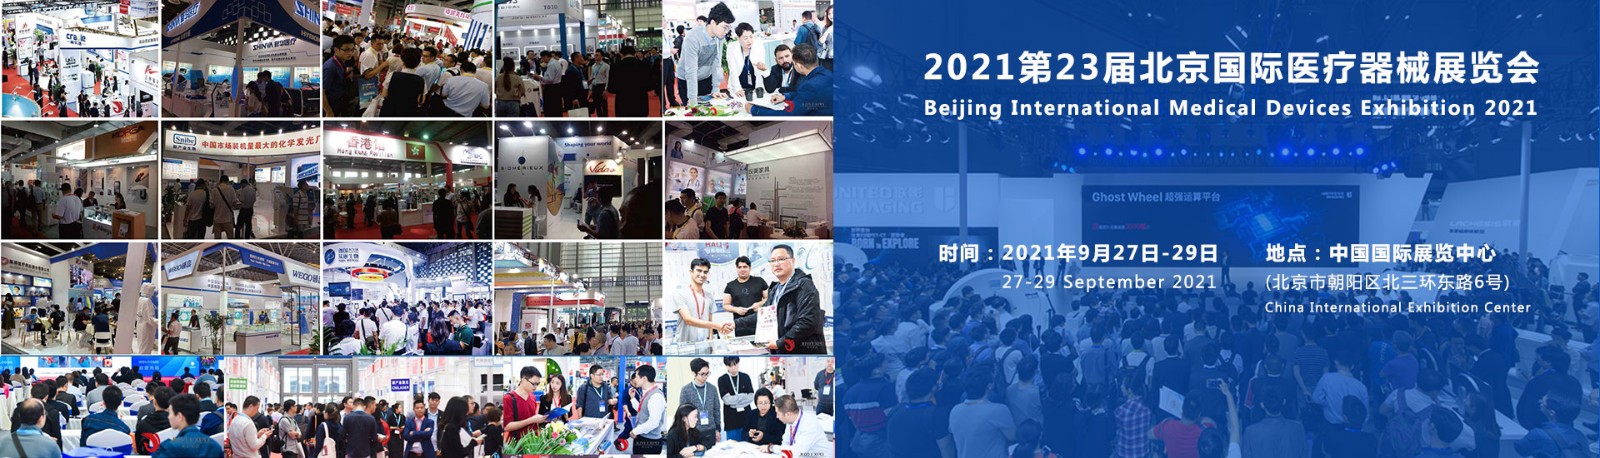 2021北京国际医疗器械展览会现已全面开始招展